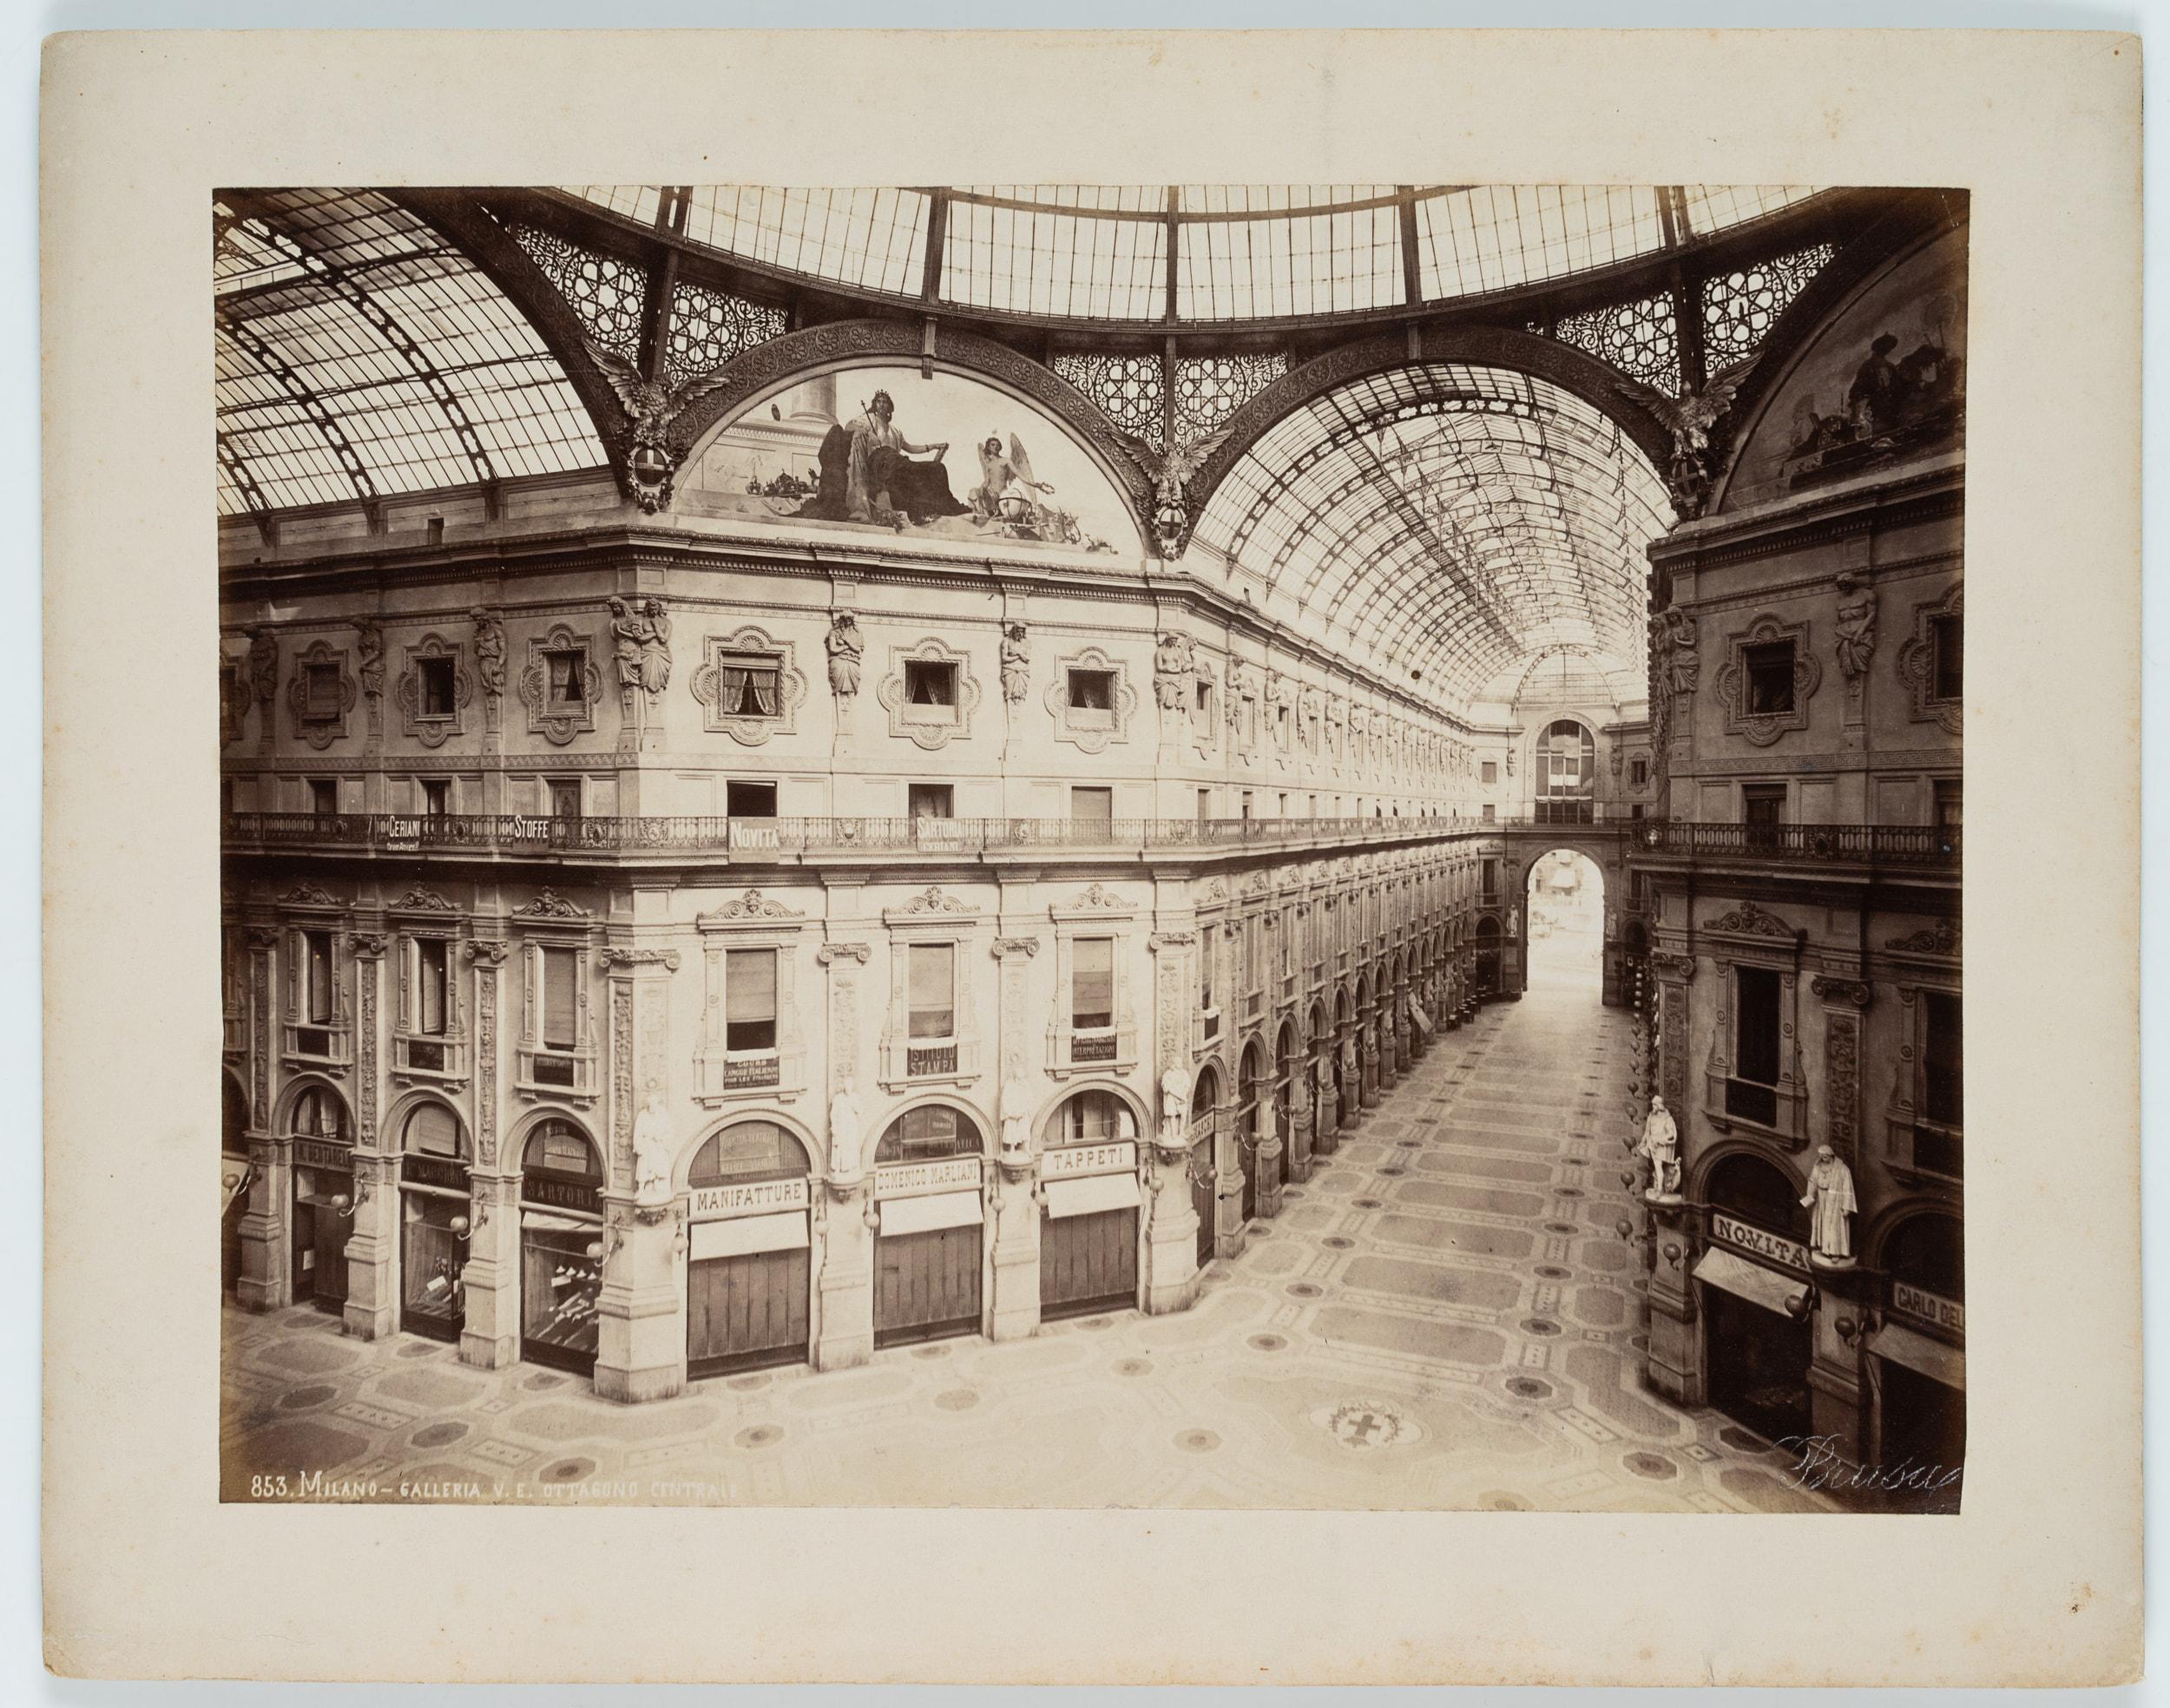 Galleria Vittorio Emanuele II, Mailand - Photograph de Giovanni Battista Brusa